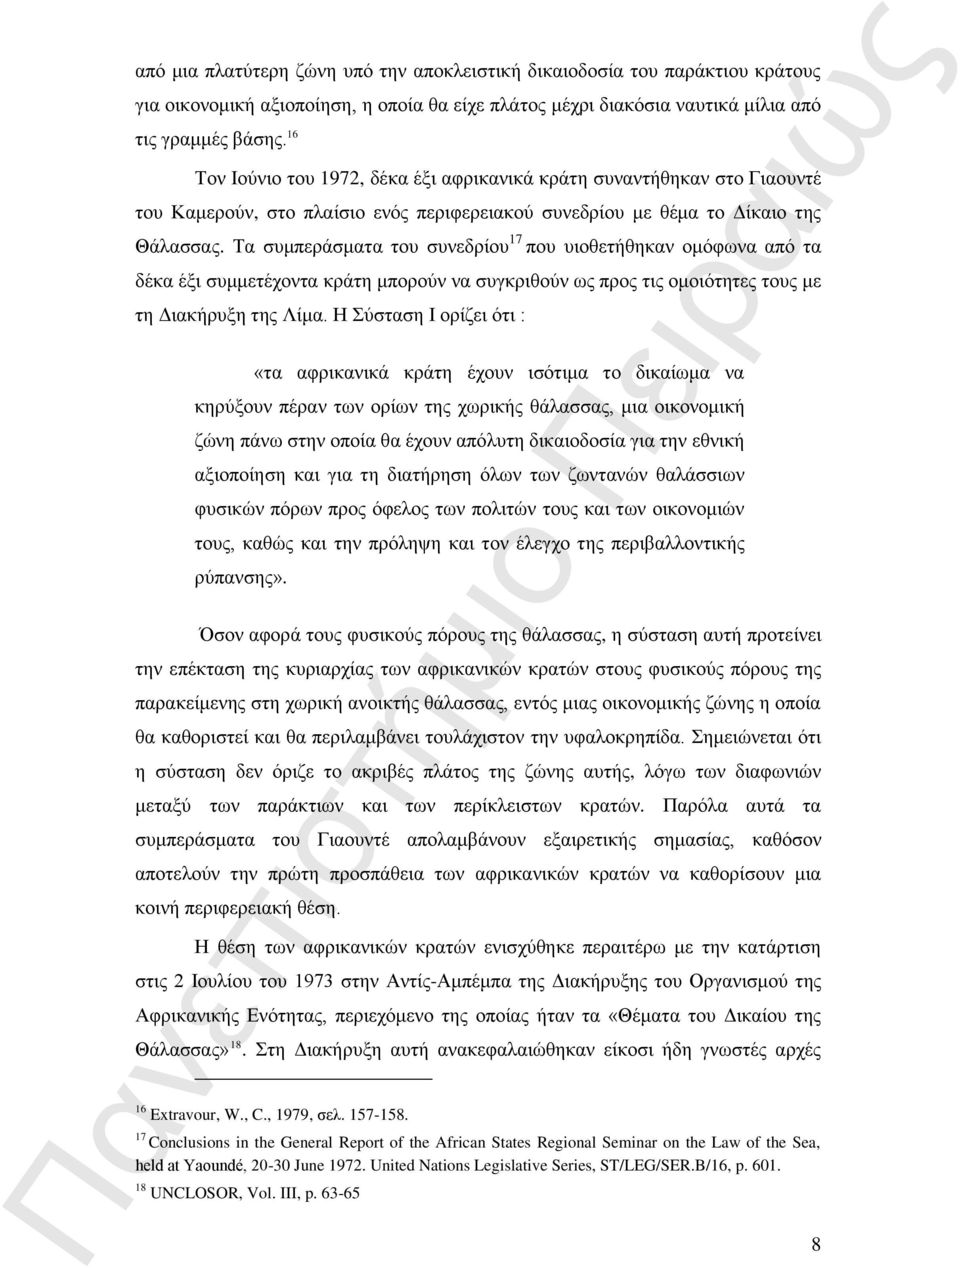 Τα συμπεράσματα του συνεδρίου 17 που υιοθετήθηκαν ομόφωνα από τα δέκα έξι συμμετέχοντα κράτη μπορούν να συγκριθούν ως προς τις ομοιότητες τους με τη Διακήρυξη της Λίμα.